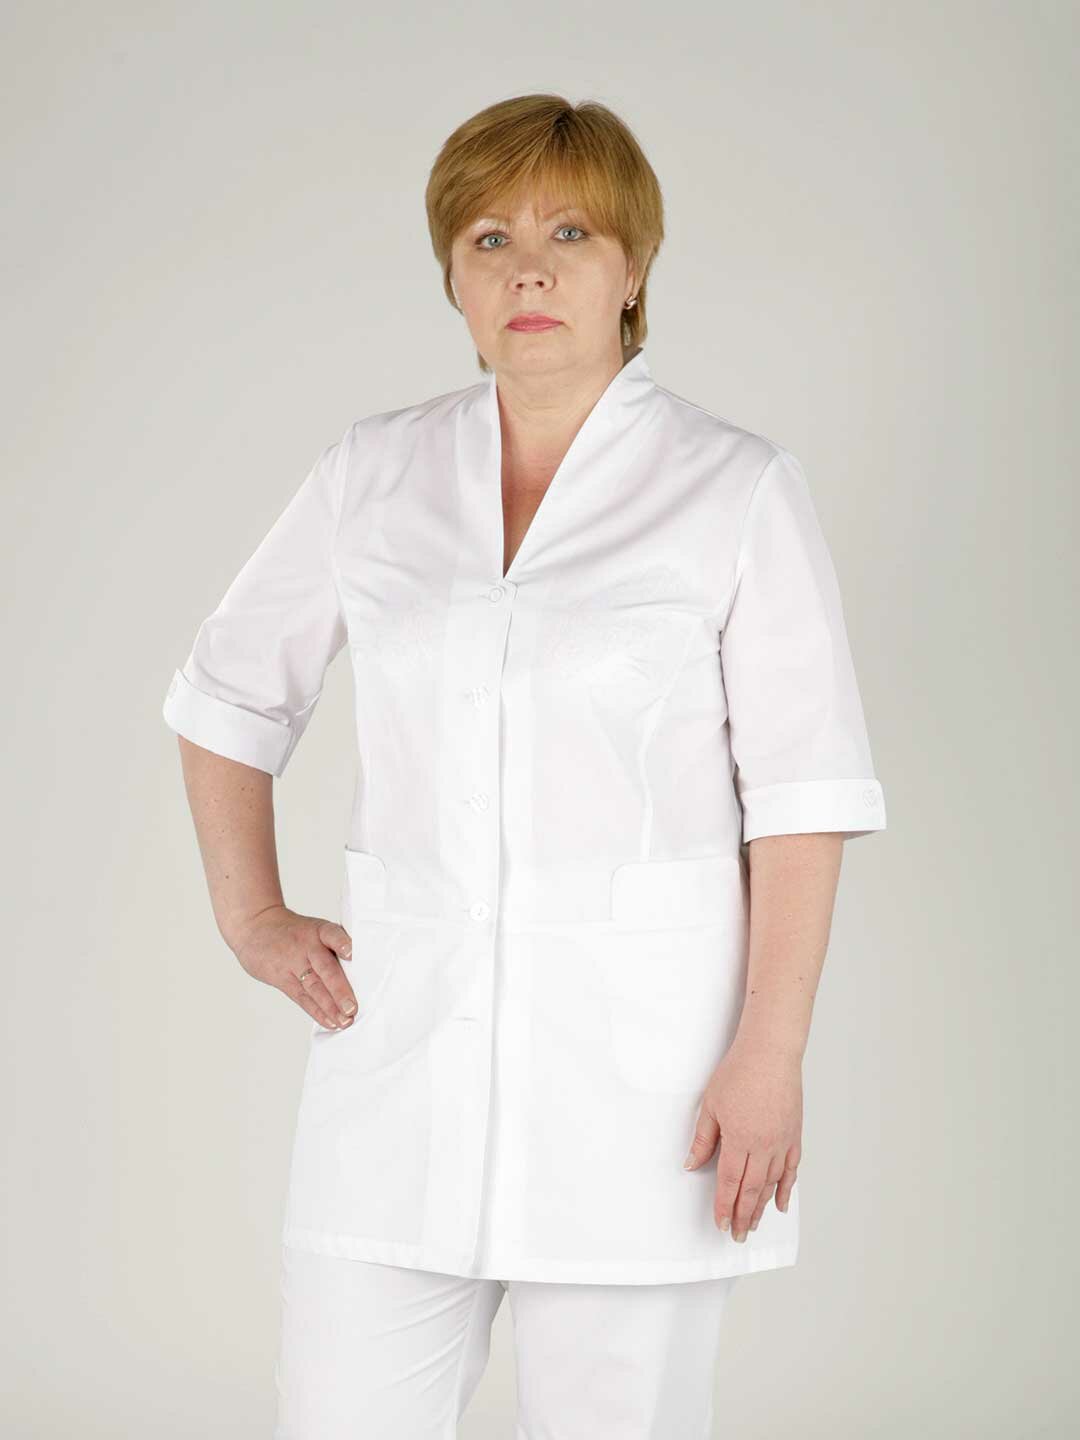 Куртка женская, производитель Фабрика швейных изделий №3, модель М-408, рост 164, размер 48, ткань поликот-стрейч, цвет белый